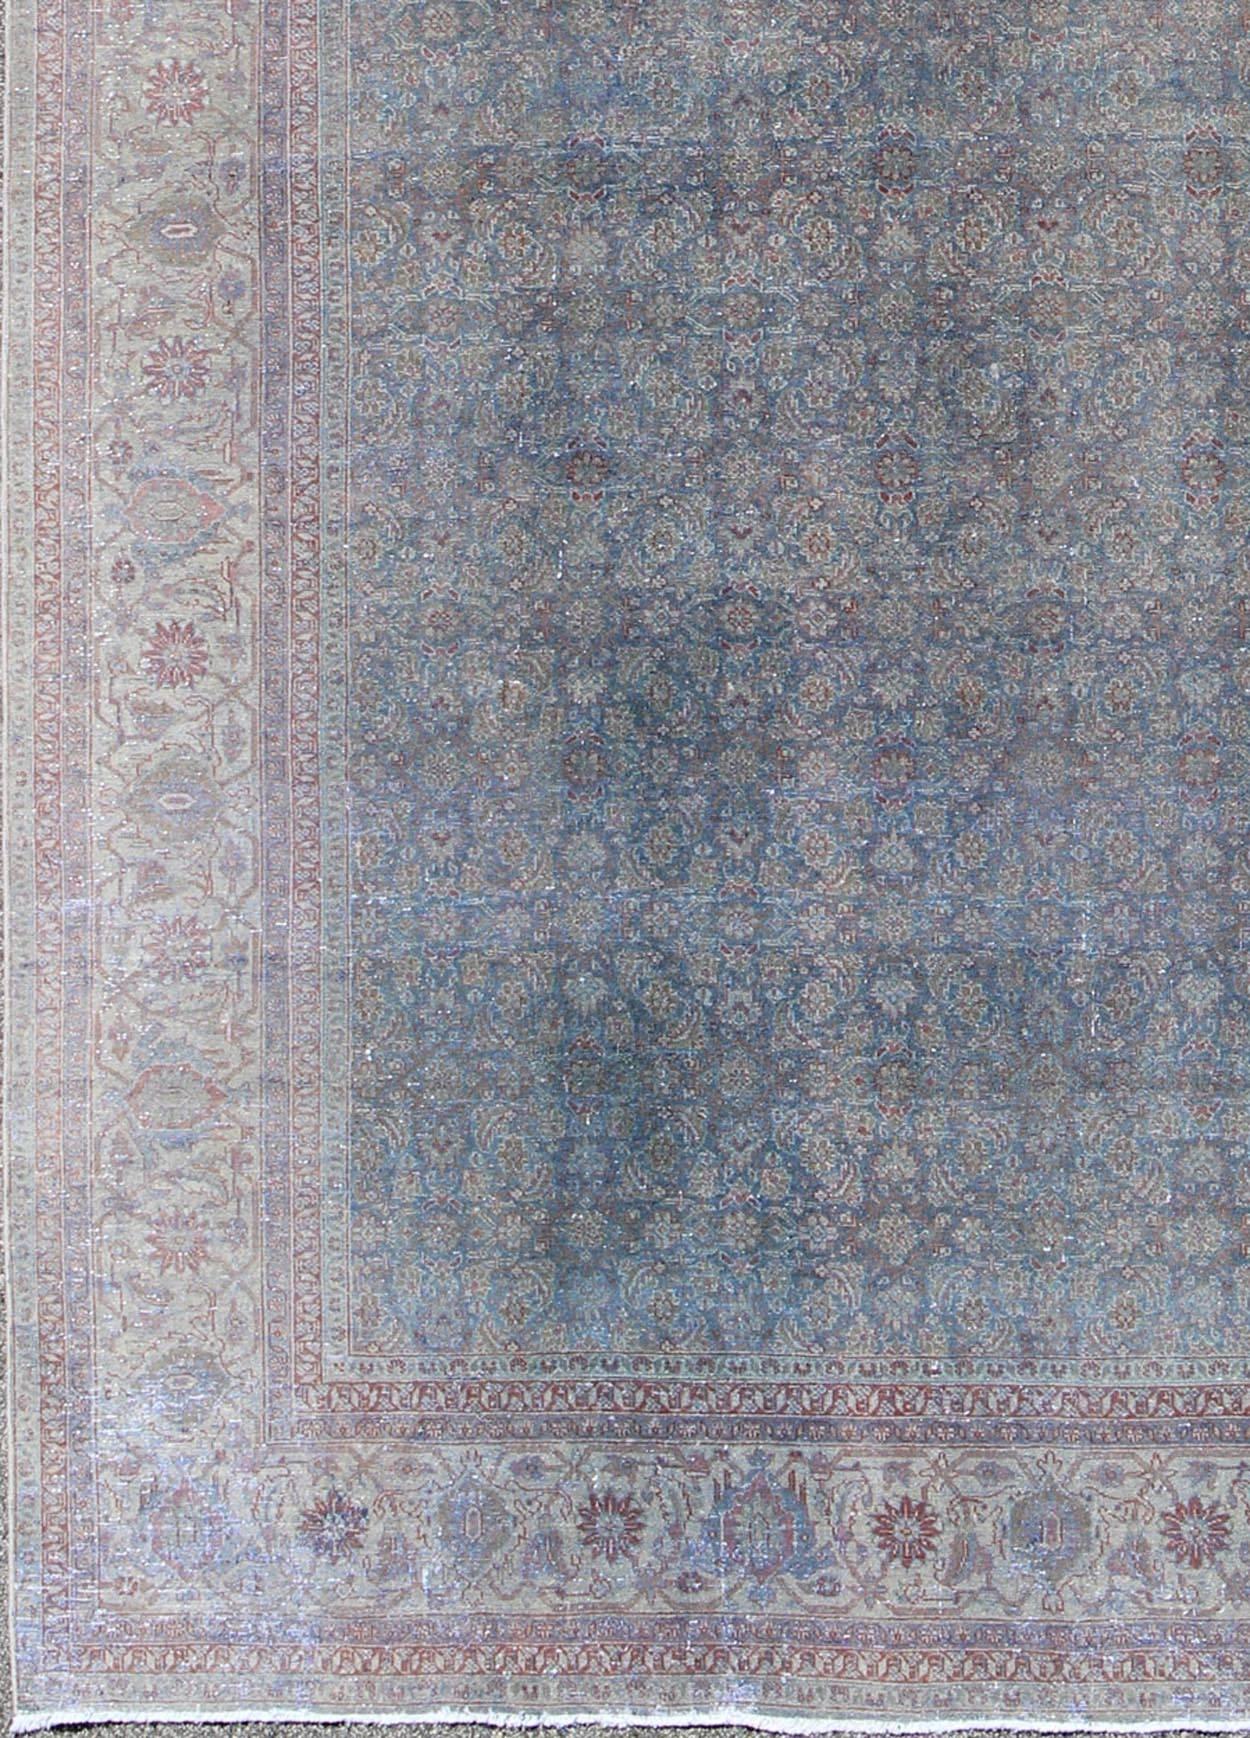 Großer antiker Tabriz-Teppich mit Herati-Muster in hellblauen Grautönen und sanftem Rot, Keivan Woven Arts / rug#17-1102, Herkunftsland / Typ: Iran / Täbris, um 1930

Maße: 9'9 x 13'5.

Dieser antike große persische Täbriz-Teppich um 1930 zeichnet